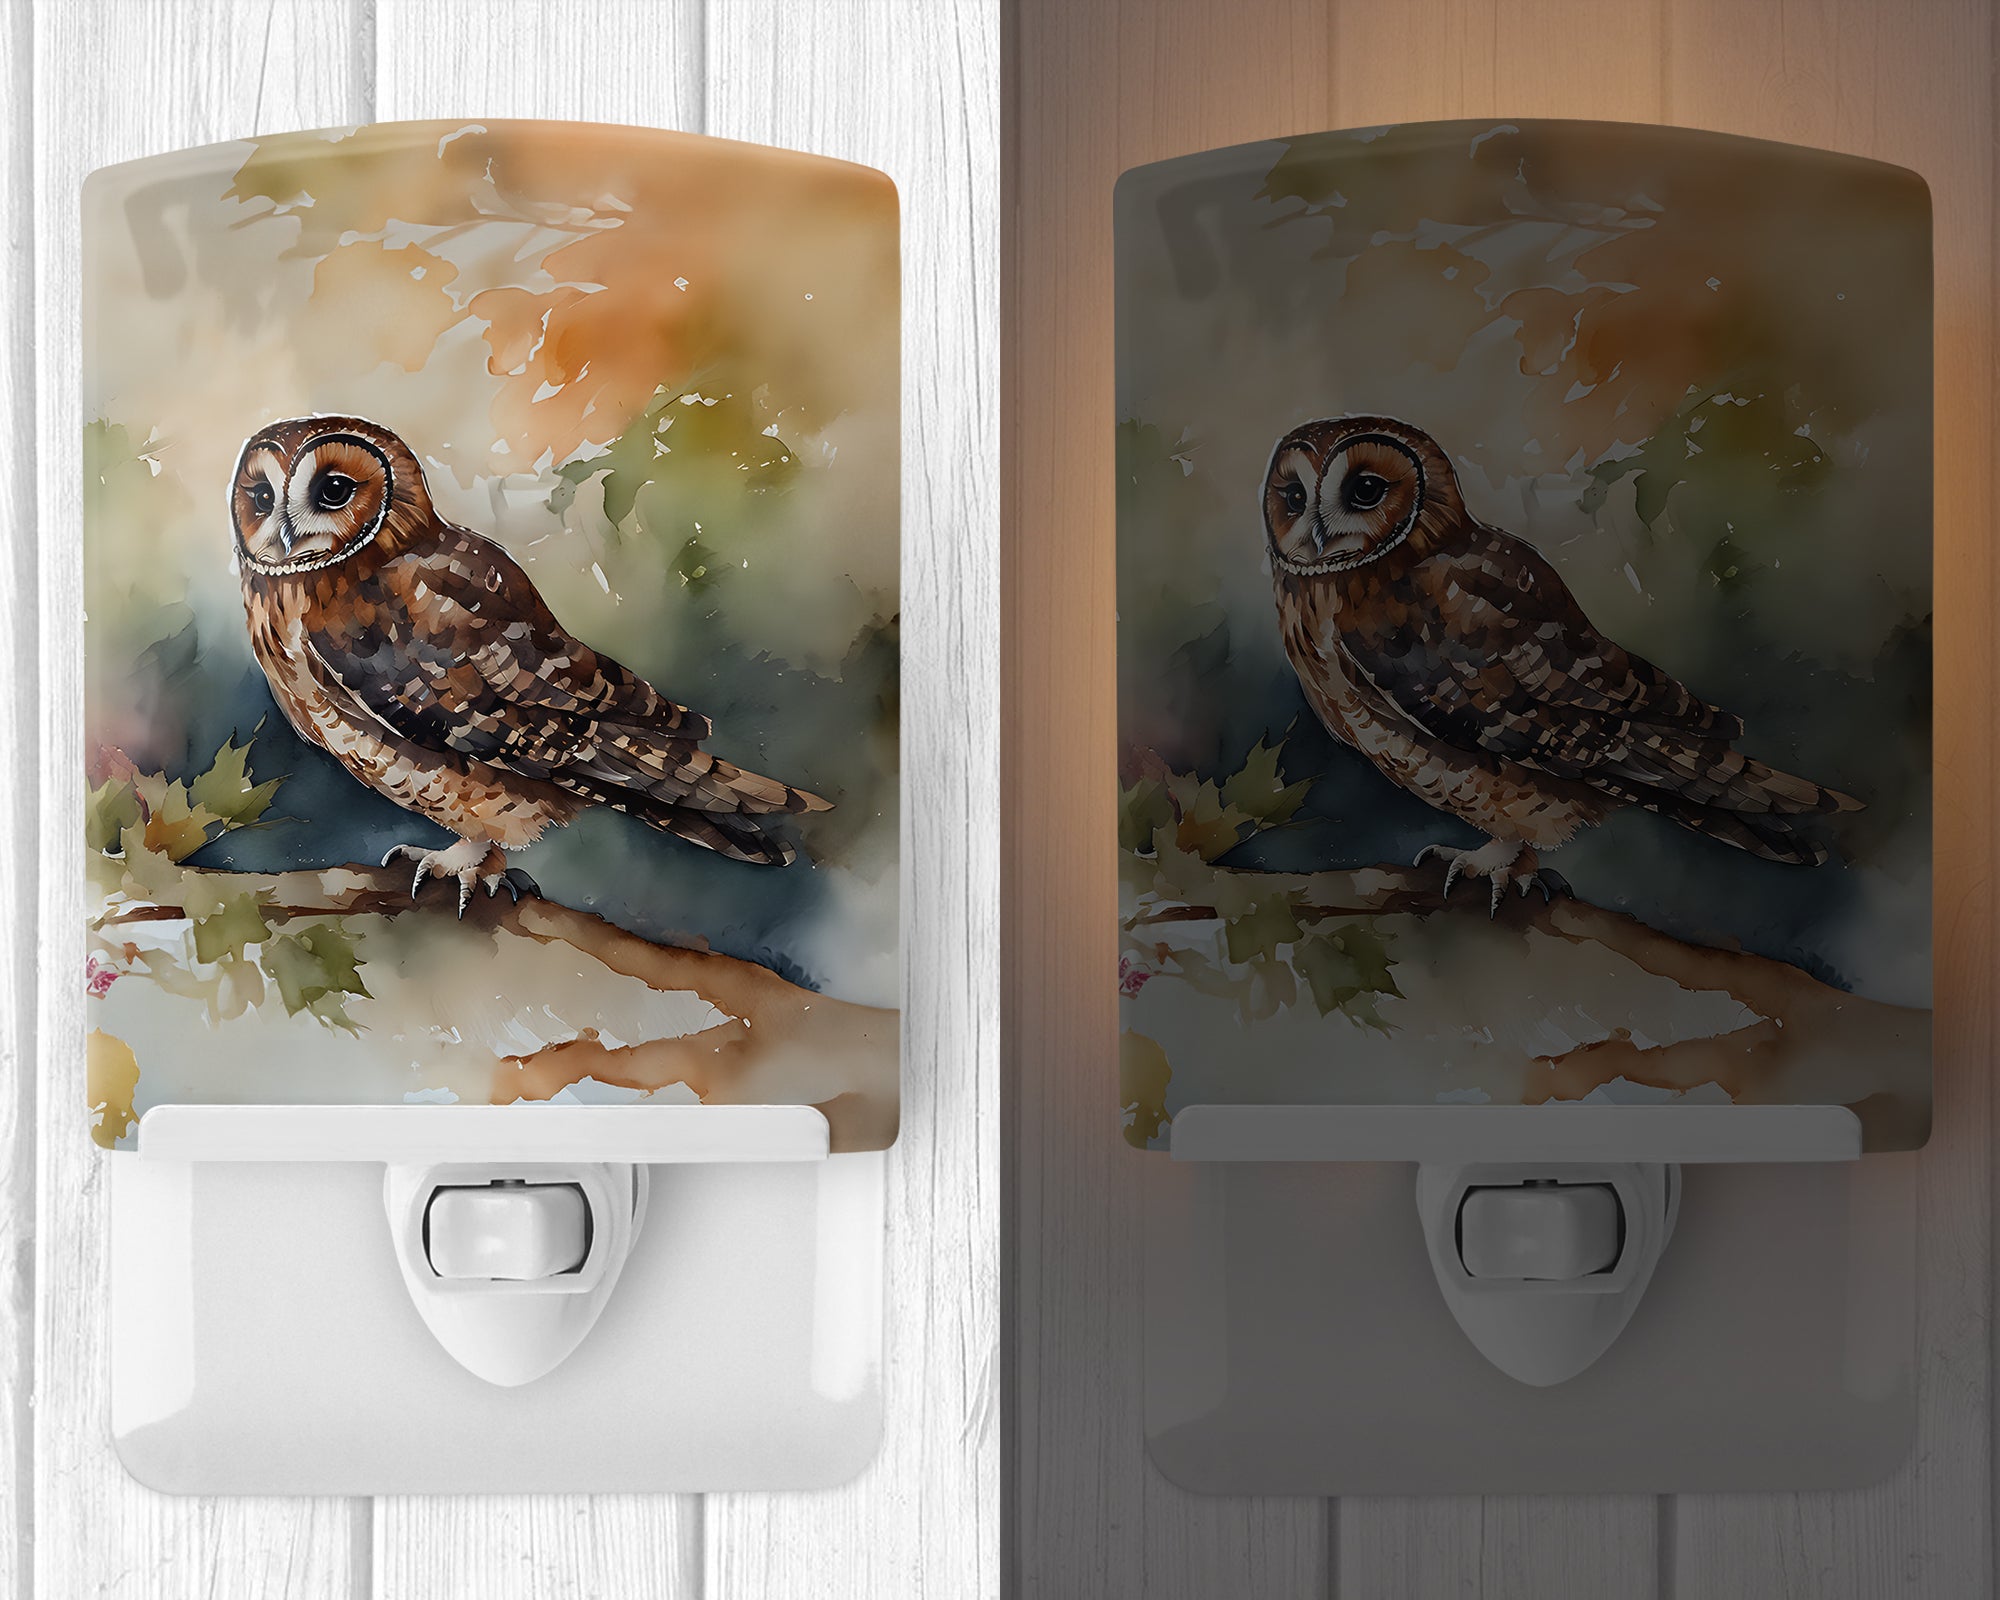 Buy this Tawny Owl Ceramic Night Light